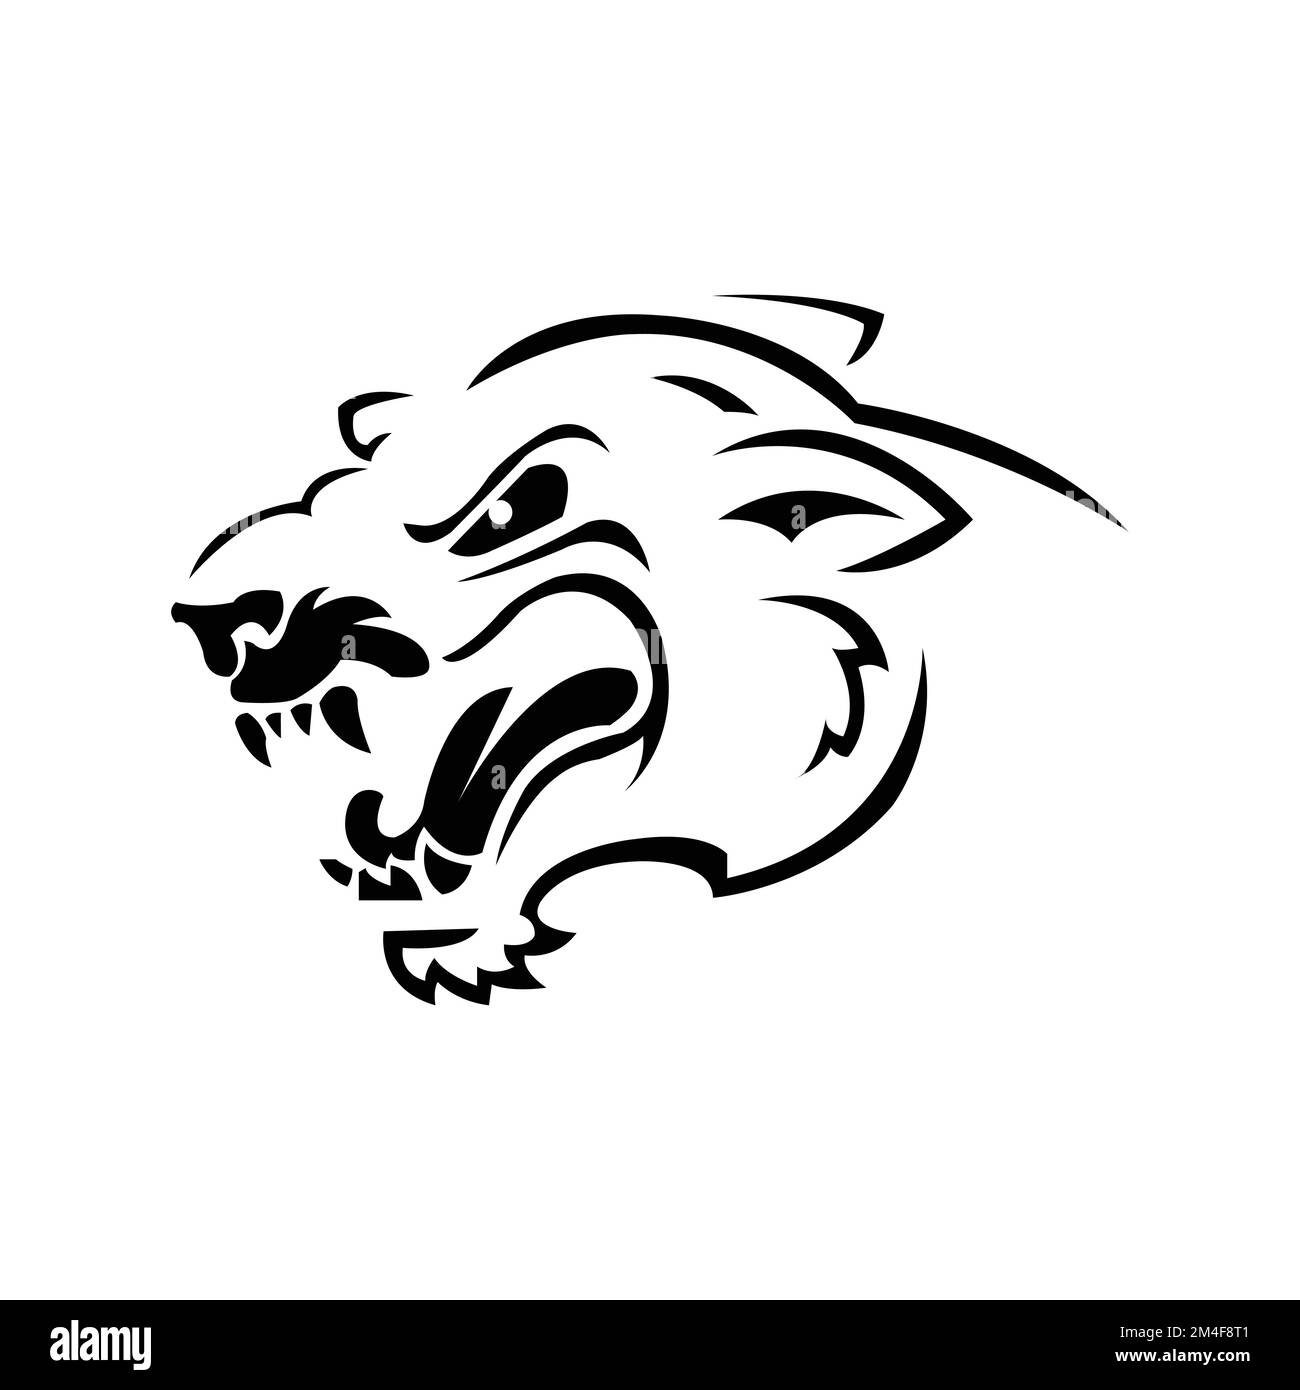 tigre logo tête noir et blanc dessin vecteur illustration modèle